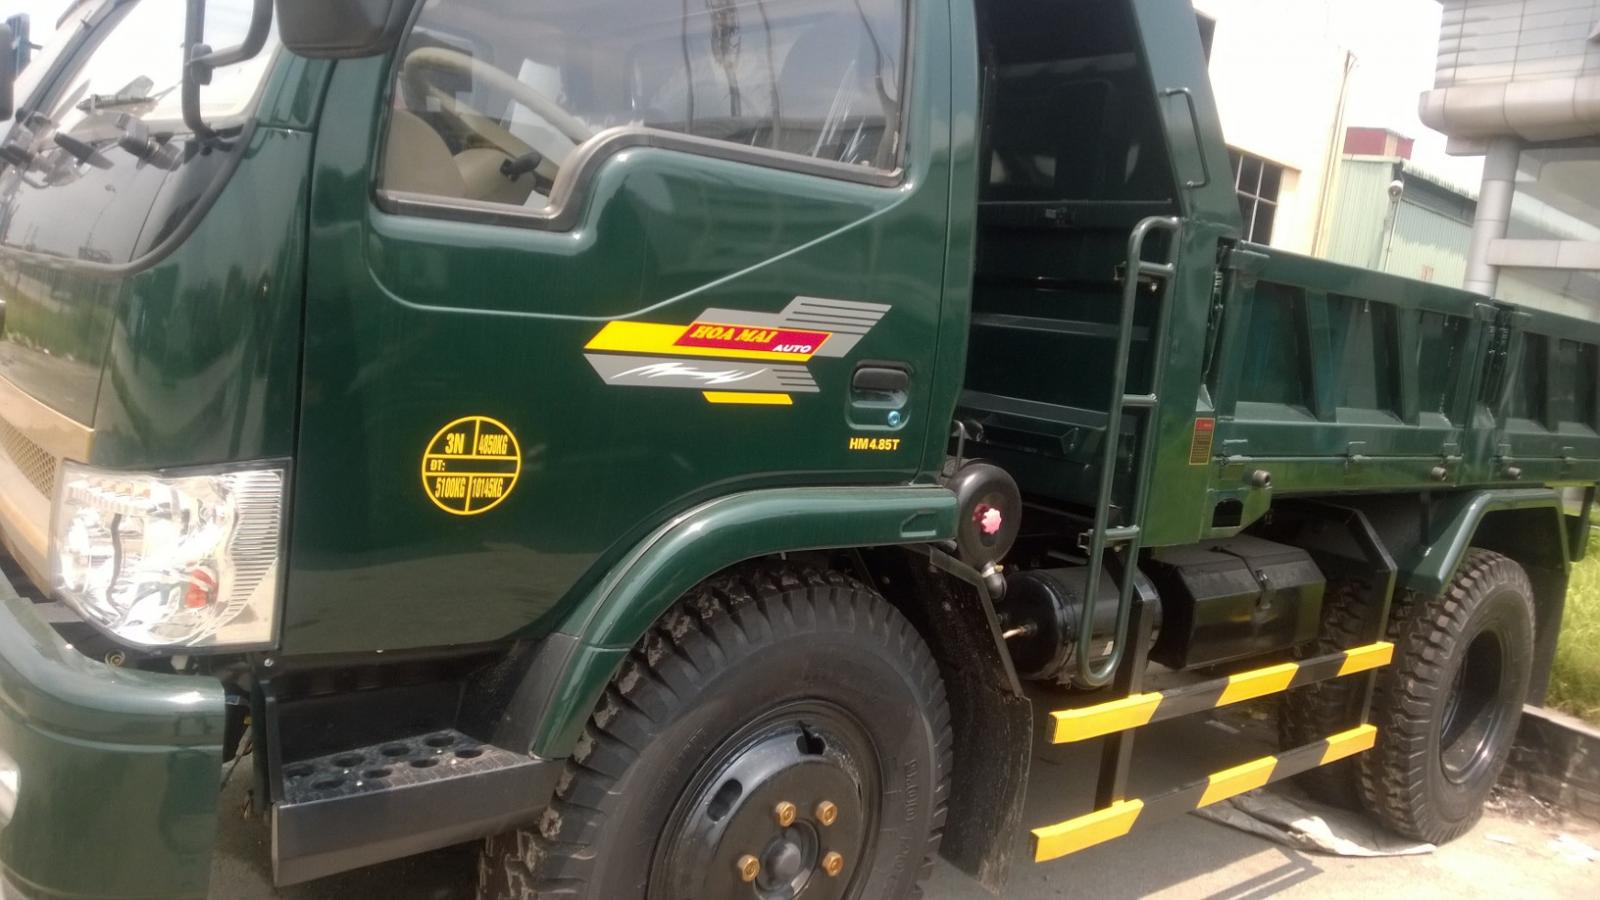 Xe tải 2,5 tấn - dưới 5 tấn 2019 - Bán xe tải ben Hoa Mai Hưng Yên loại 4 tấn thành cao 73cm giá tốt nhất toàn quốc gặp liên hệ -0984 983 915